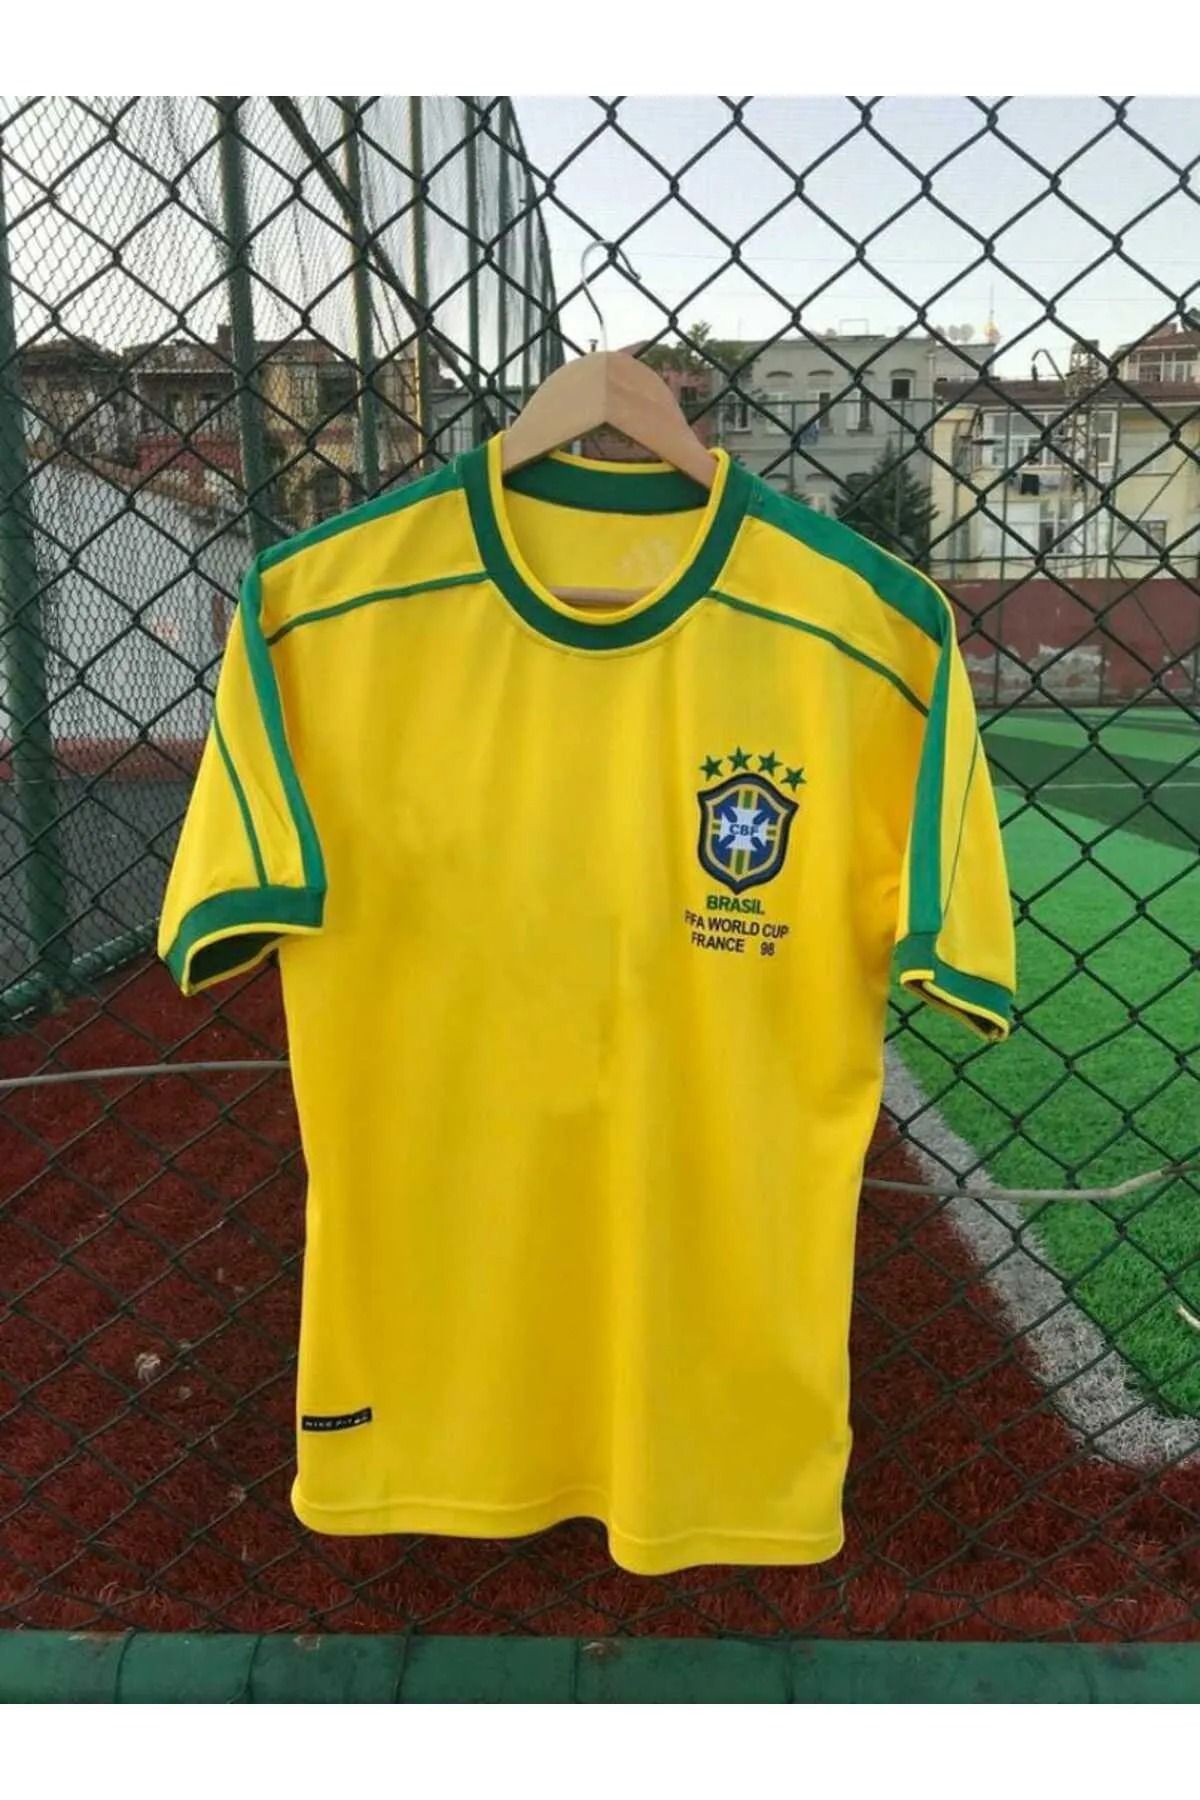 AJAX STAR Brezilya Milli Takımı 98 Dünya Kupası Alex De Souza Nostalji Forması